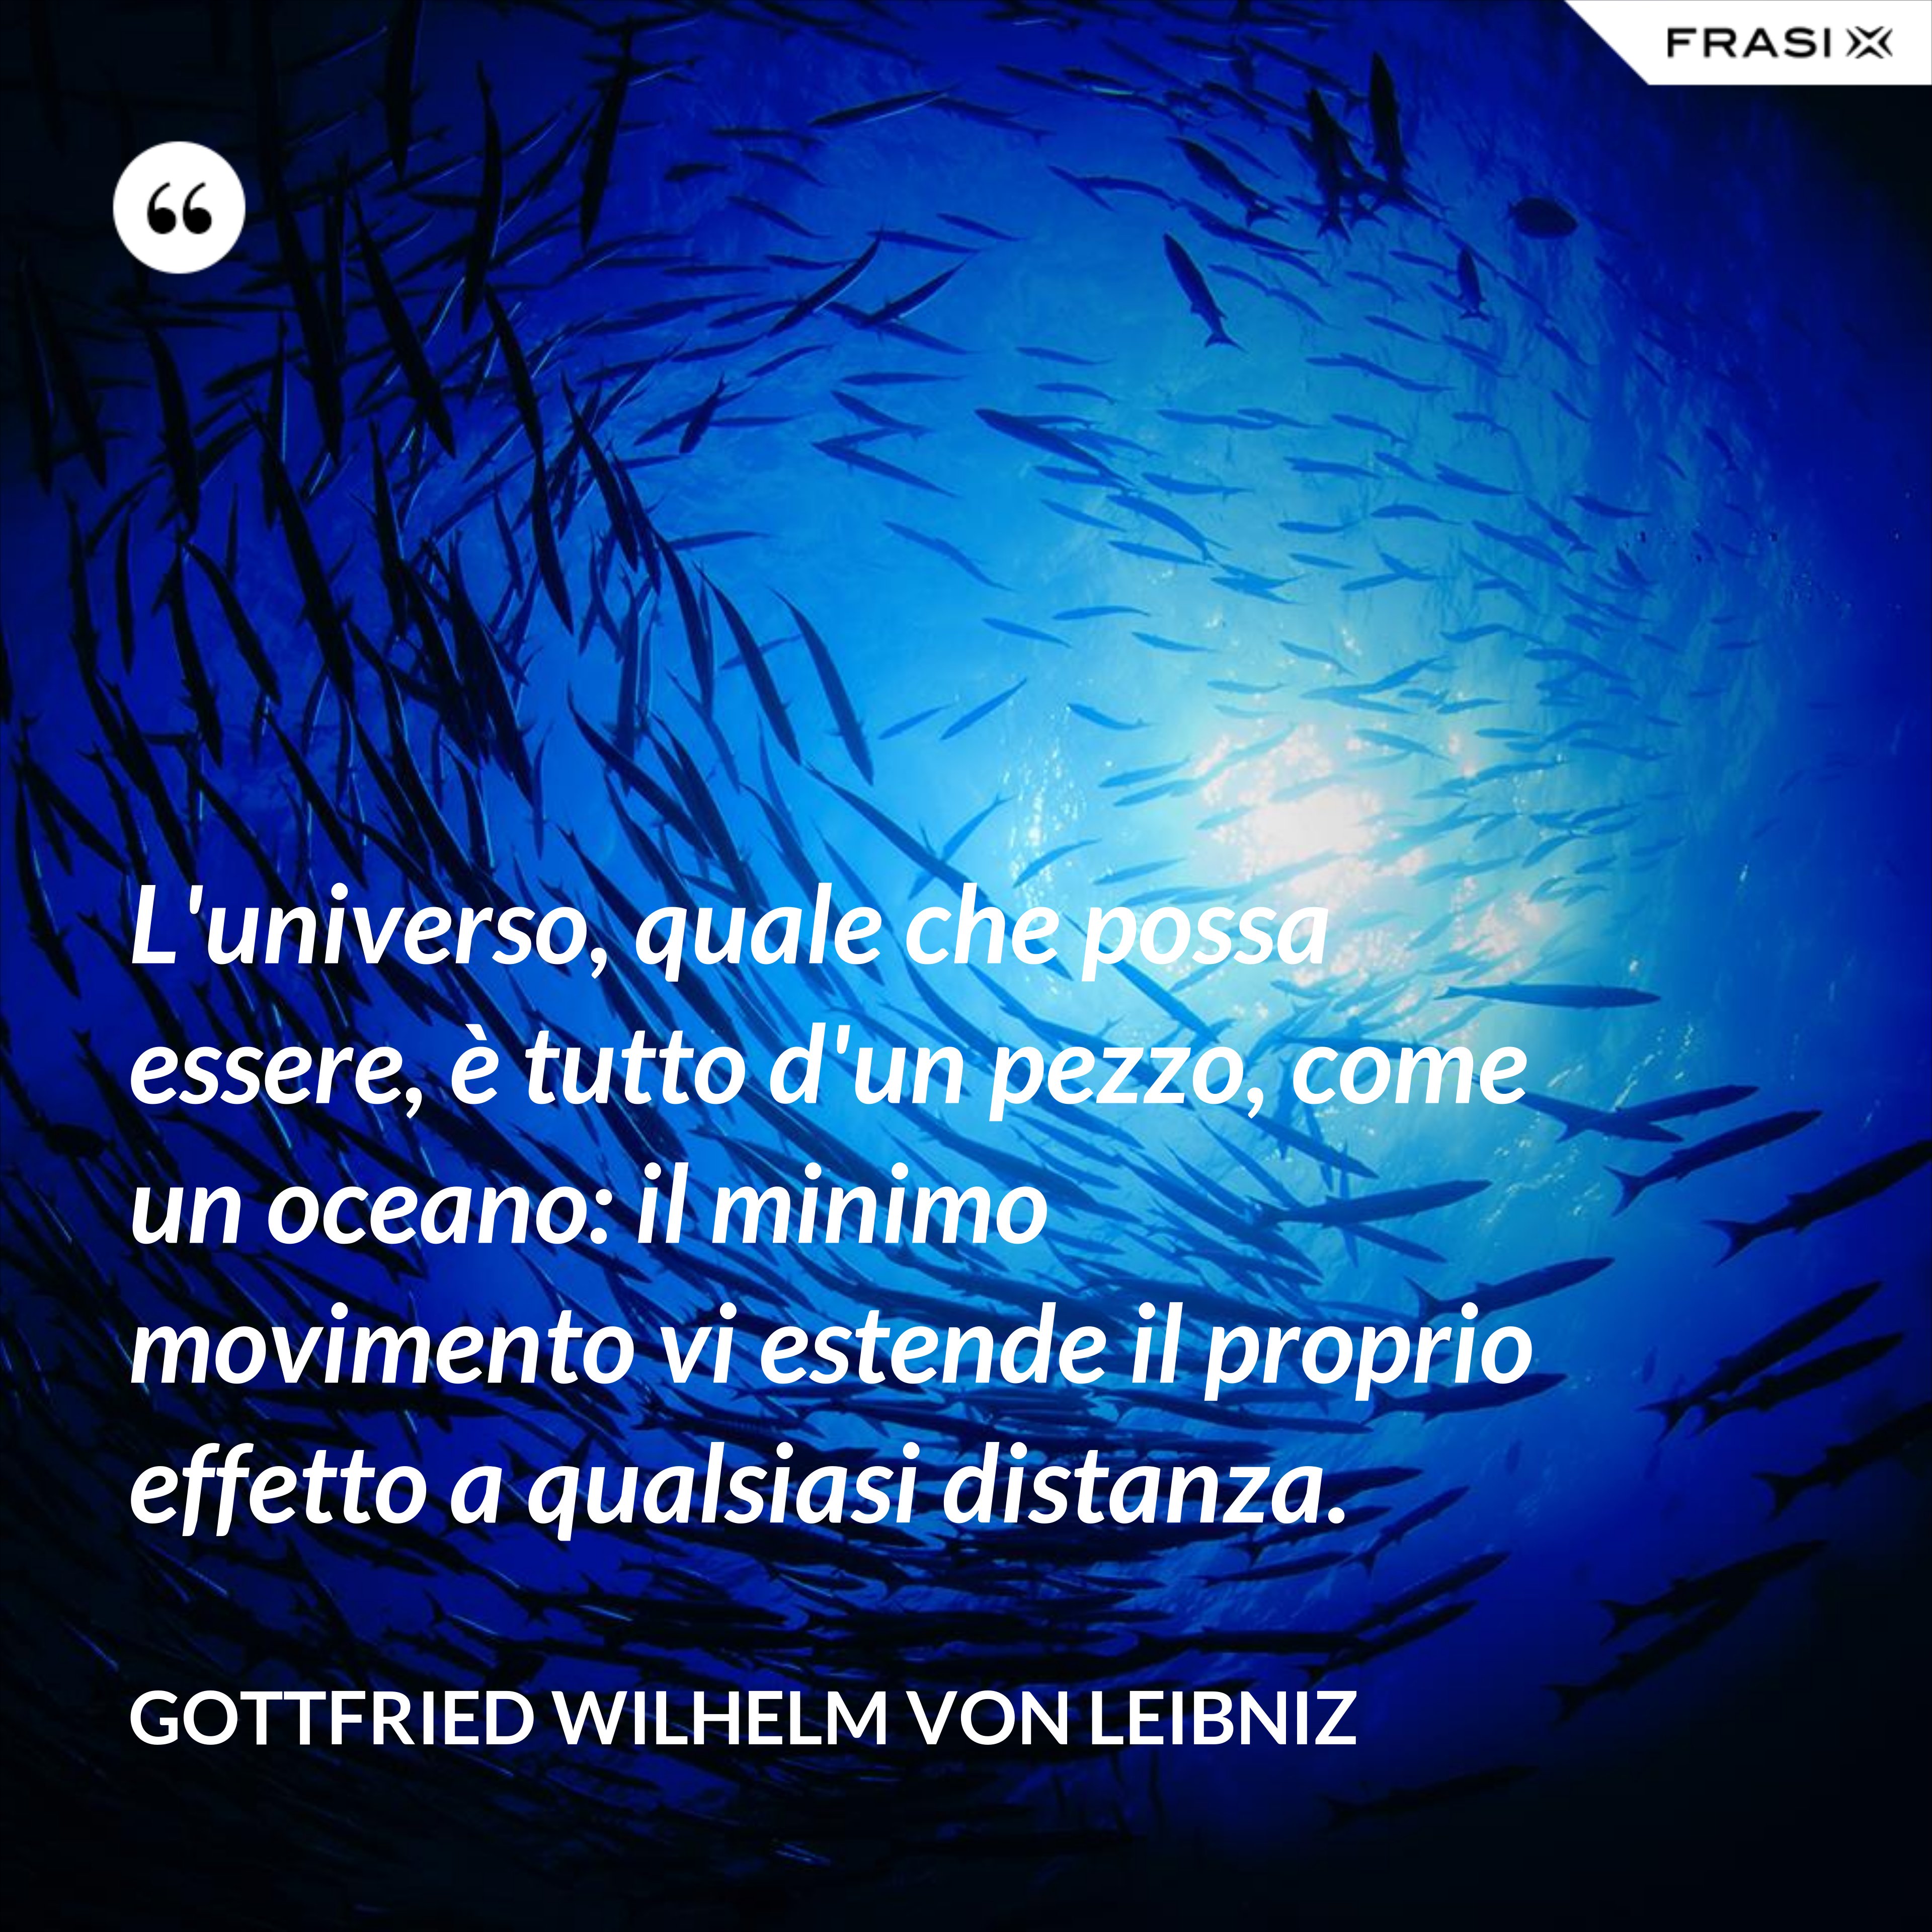 L'universo, quale che possa essere, è tutto d'un pezzo, come un oceano: il minimo movimento vi estende il proprio effetto a qualsiasi distanza. - Gottfried Wilhelm von Leibniz